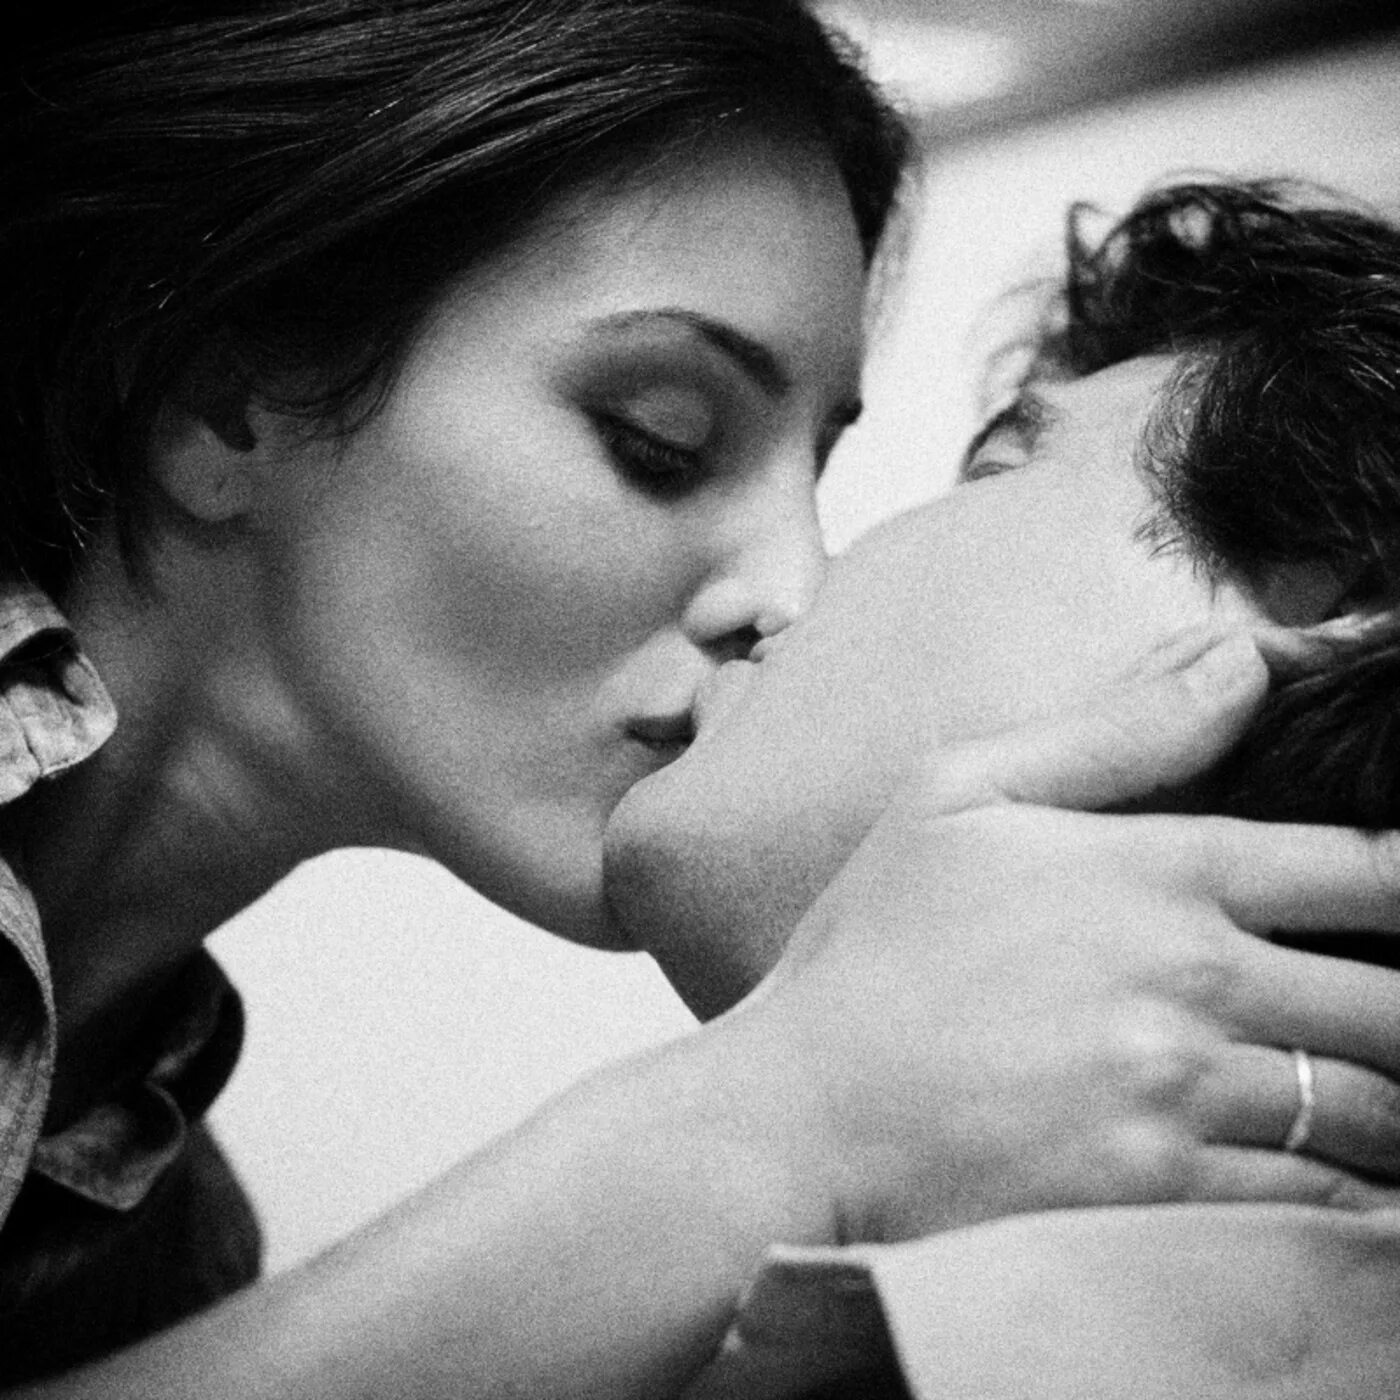 Приснилось целоваться с мужем. Поцелуй. Объятия и поцелуи. Нежный поцелуй в щечку. Нежные обнимания и поцелуи.